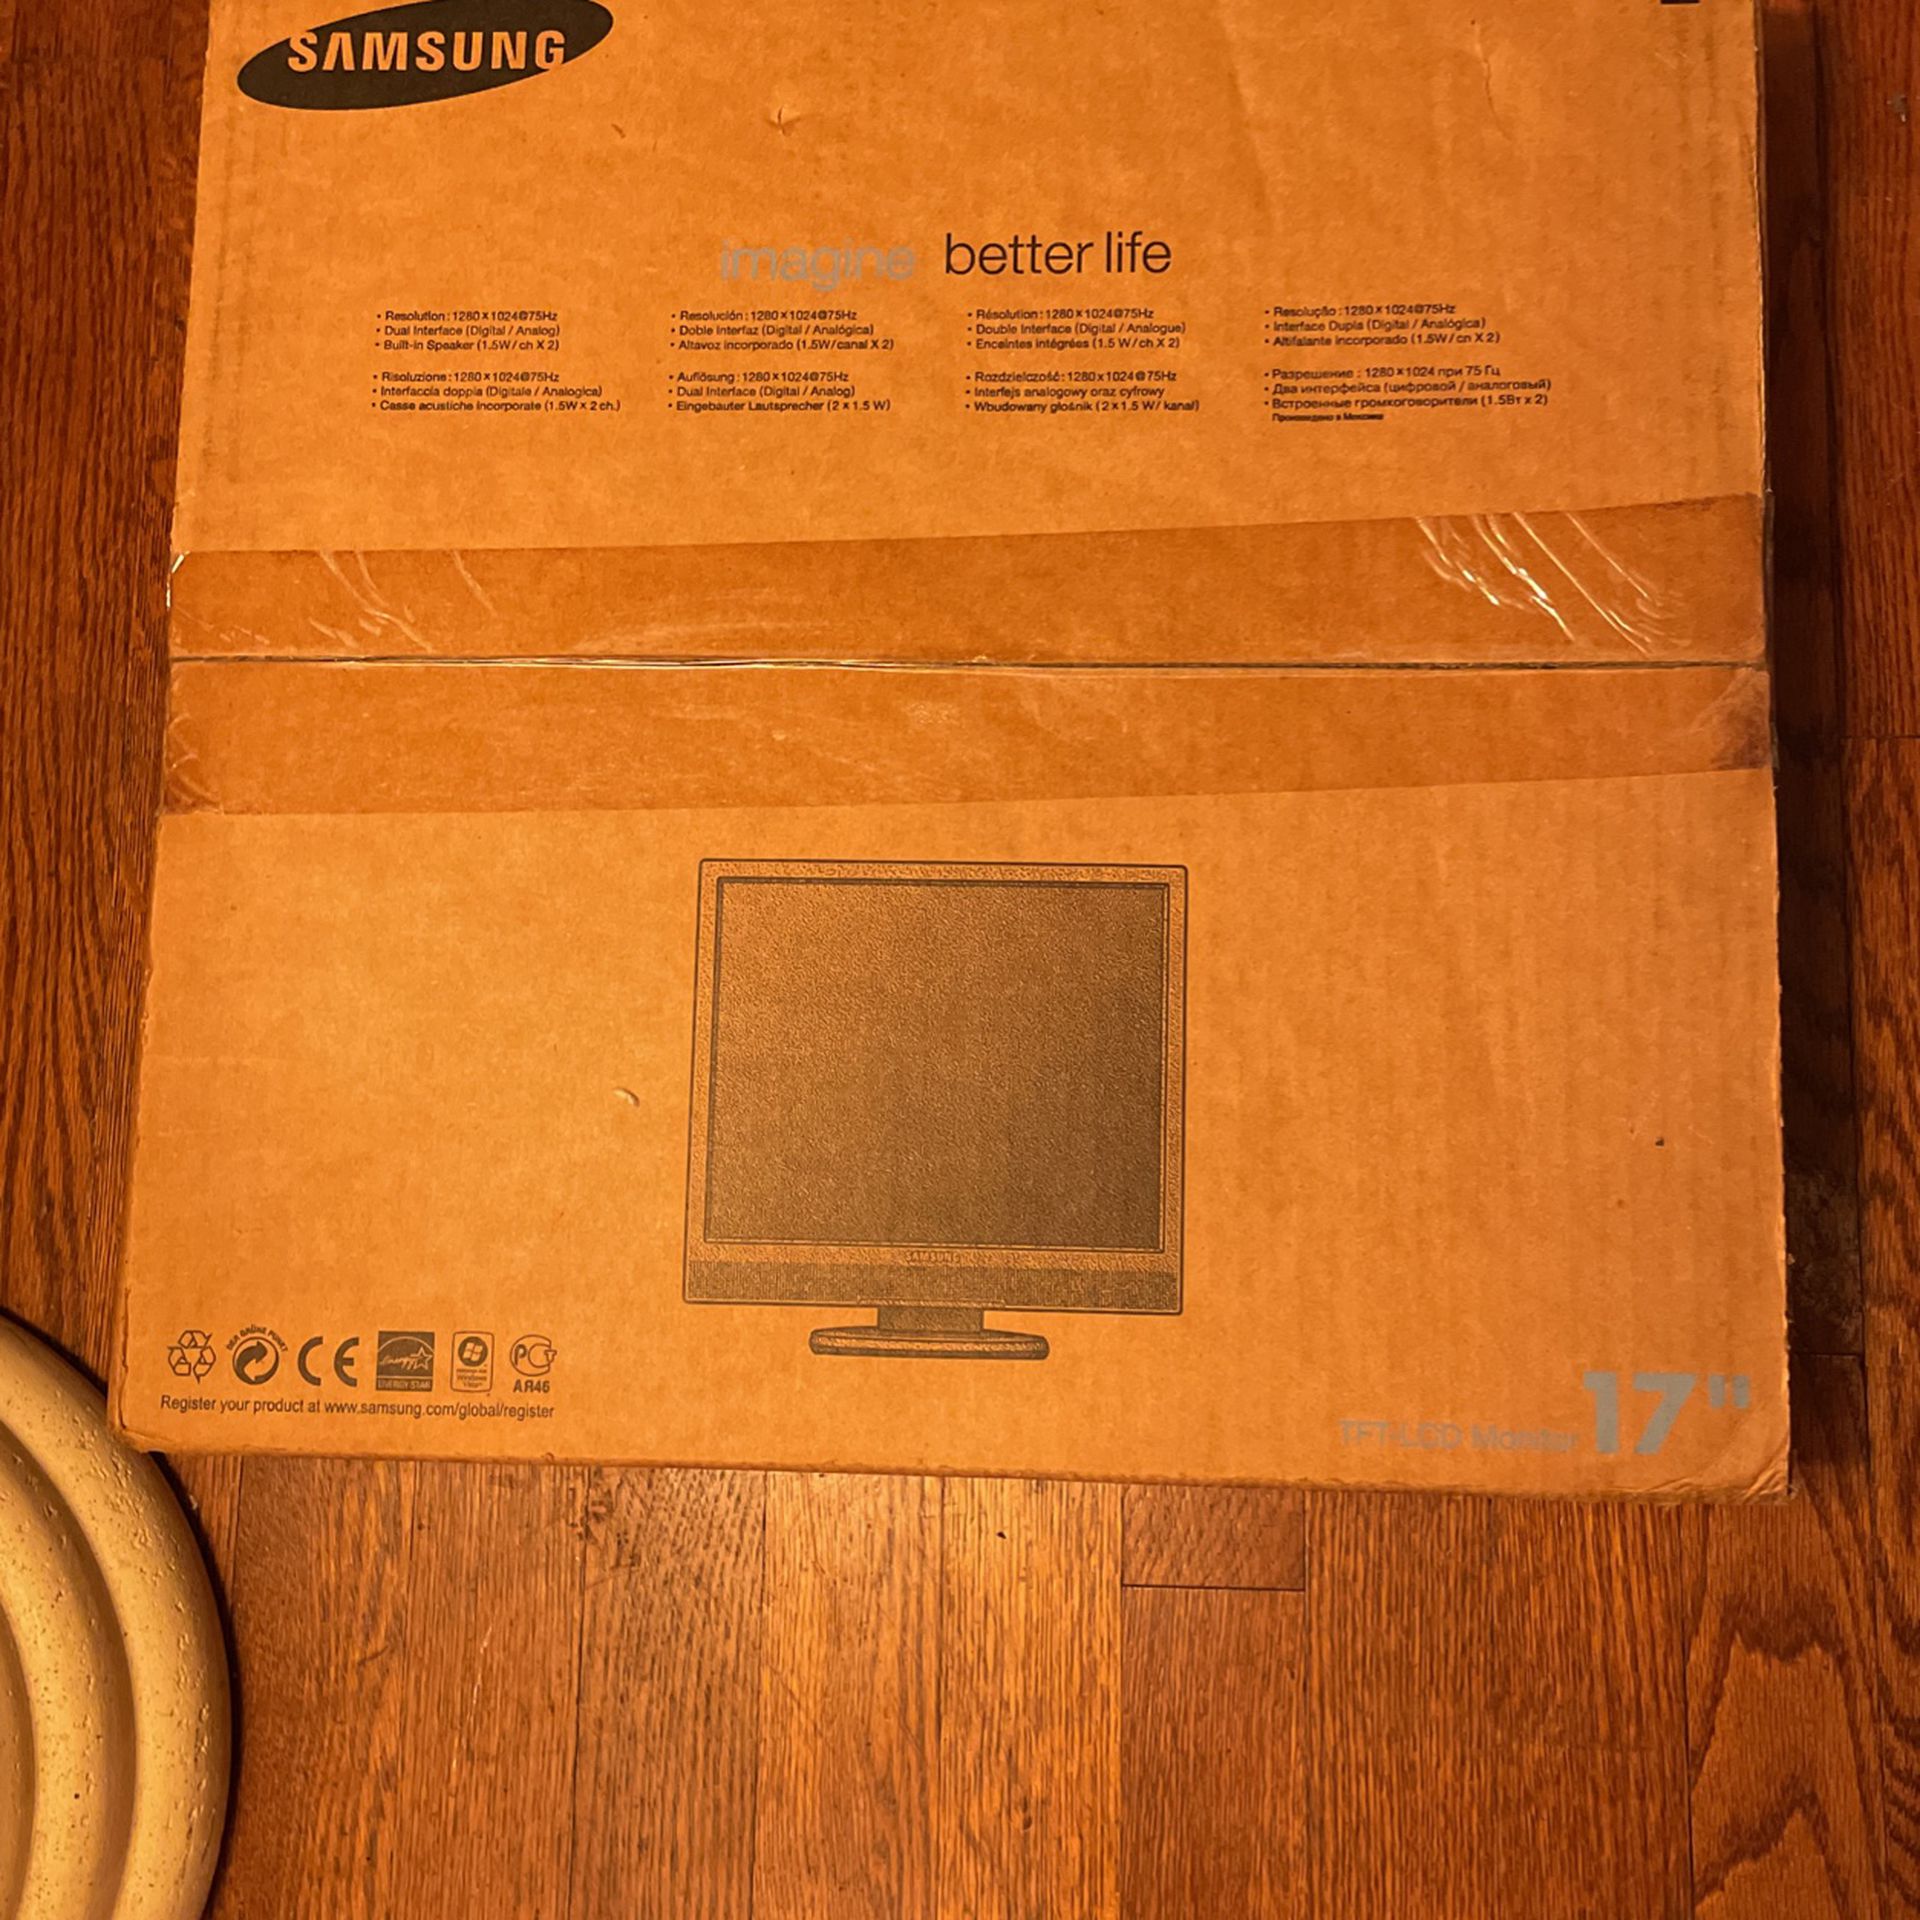 Samsung LCD Computer Monitor 17” Grey 